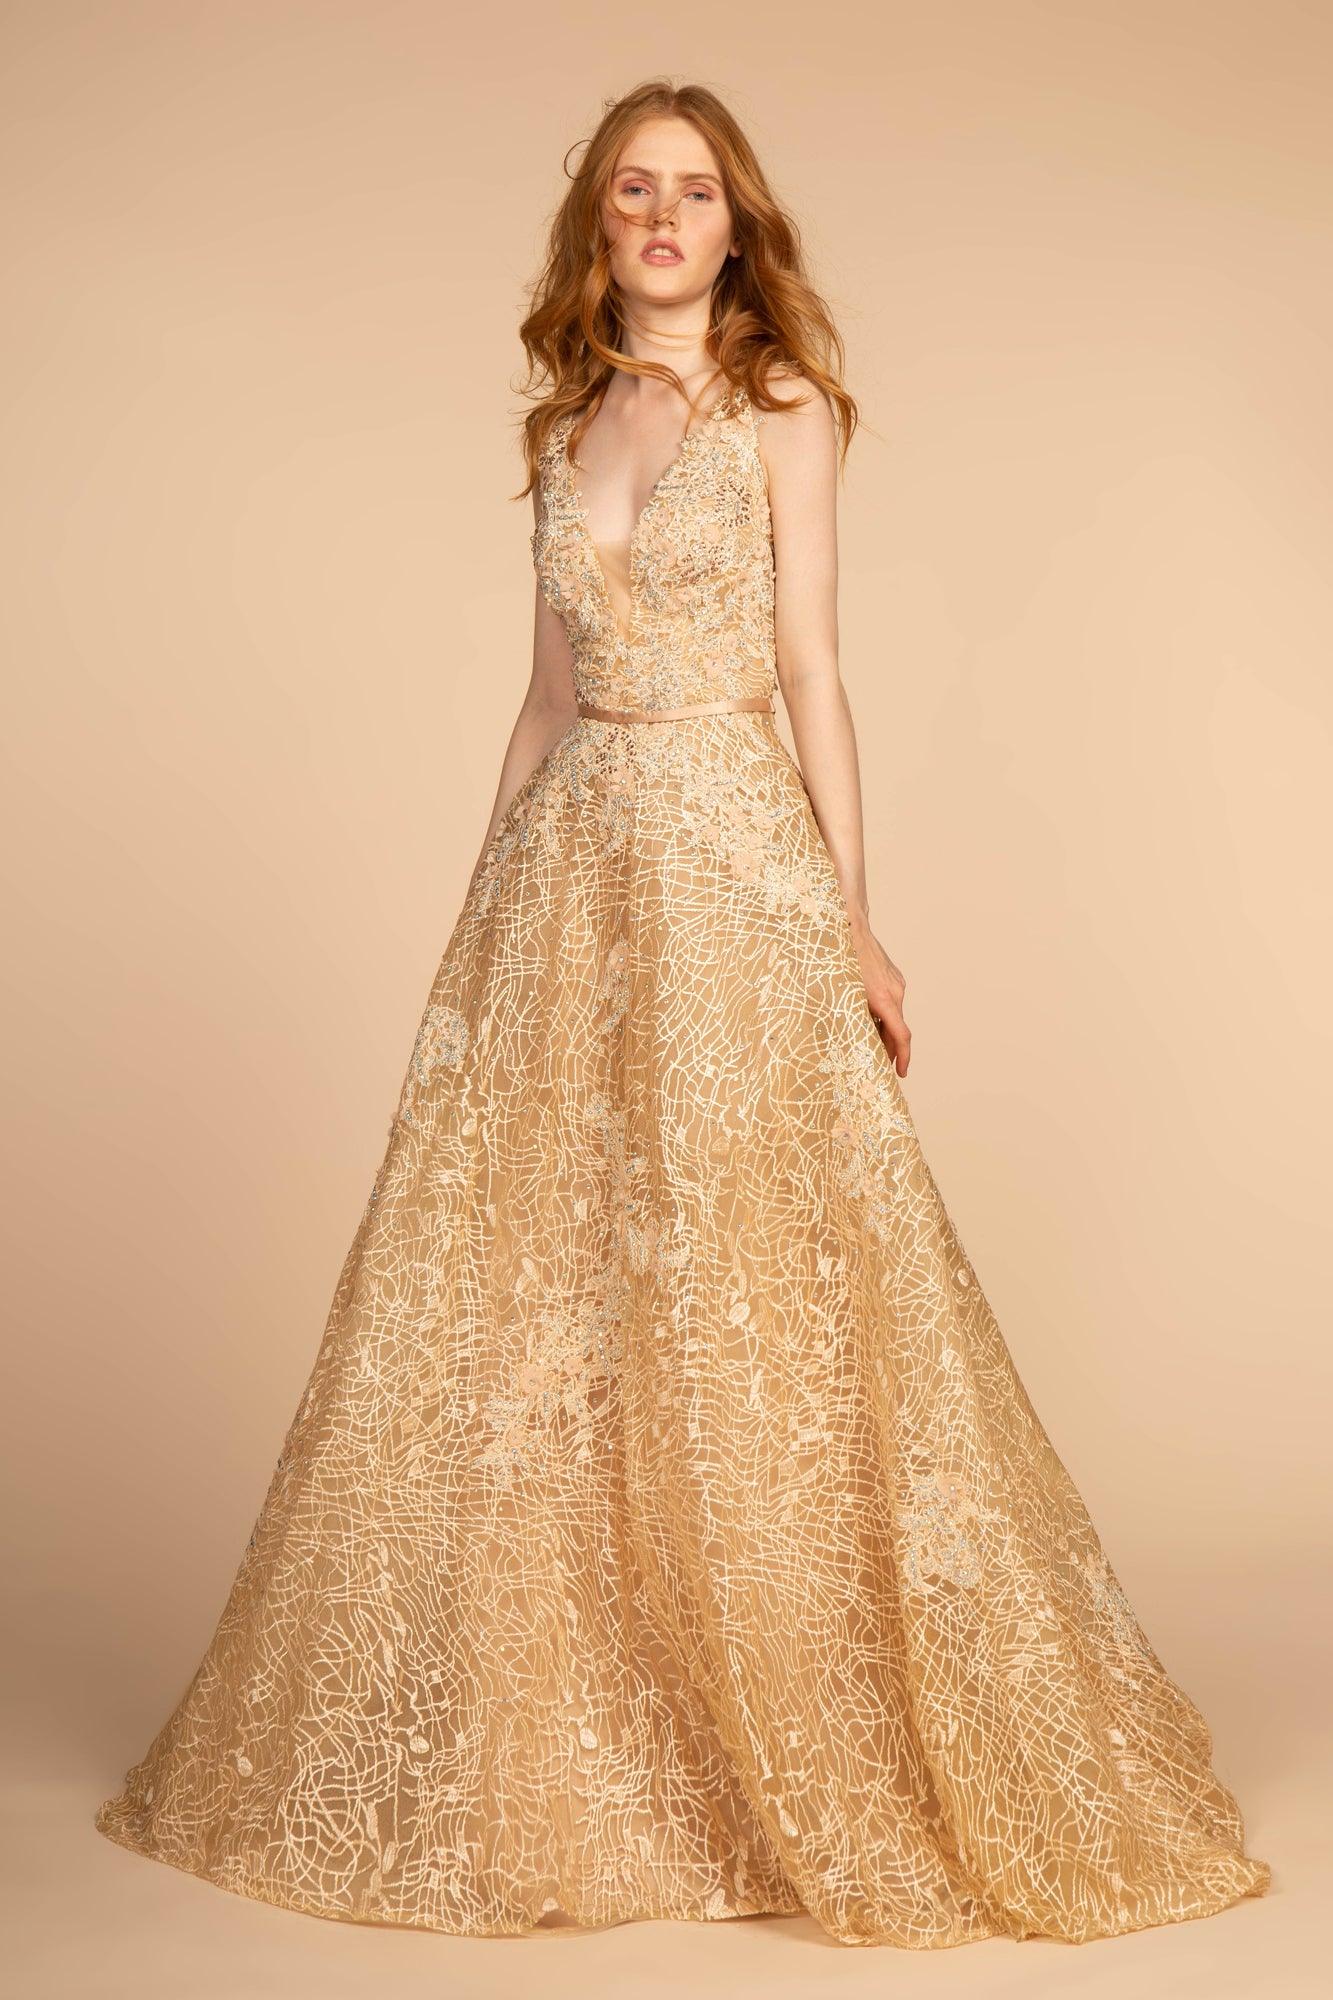 Long Formal Prom Dress Evening Gown - The Dress Outlet Elizabeth K